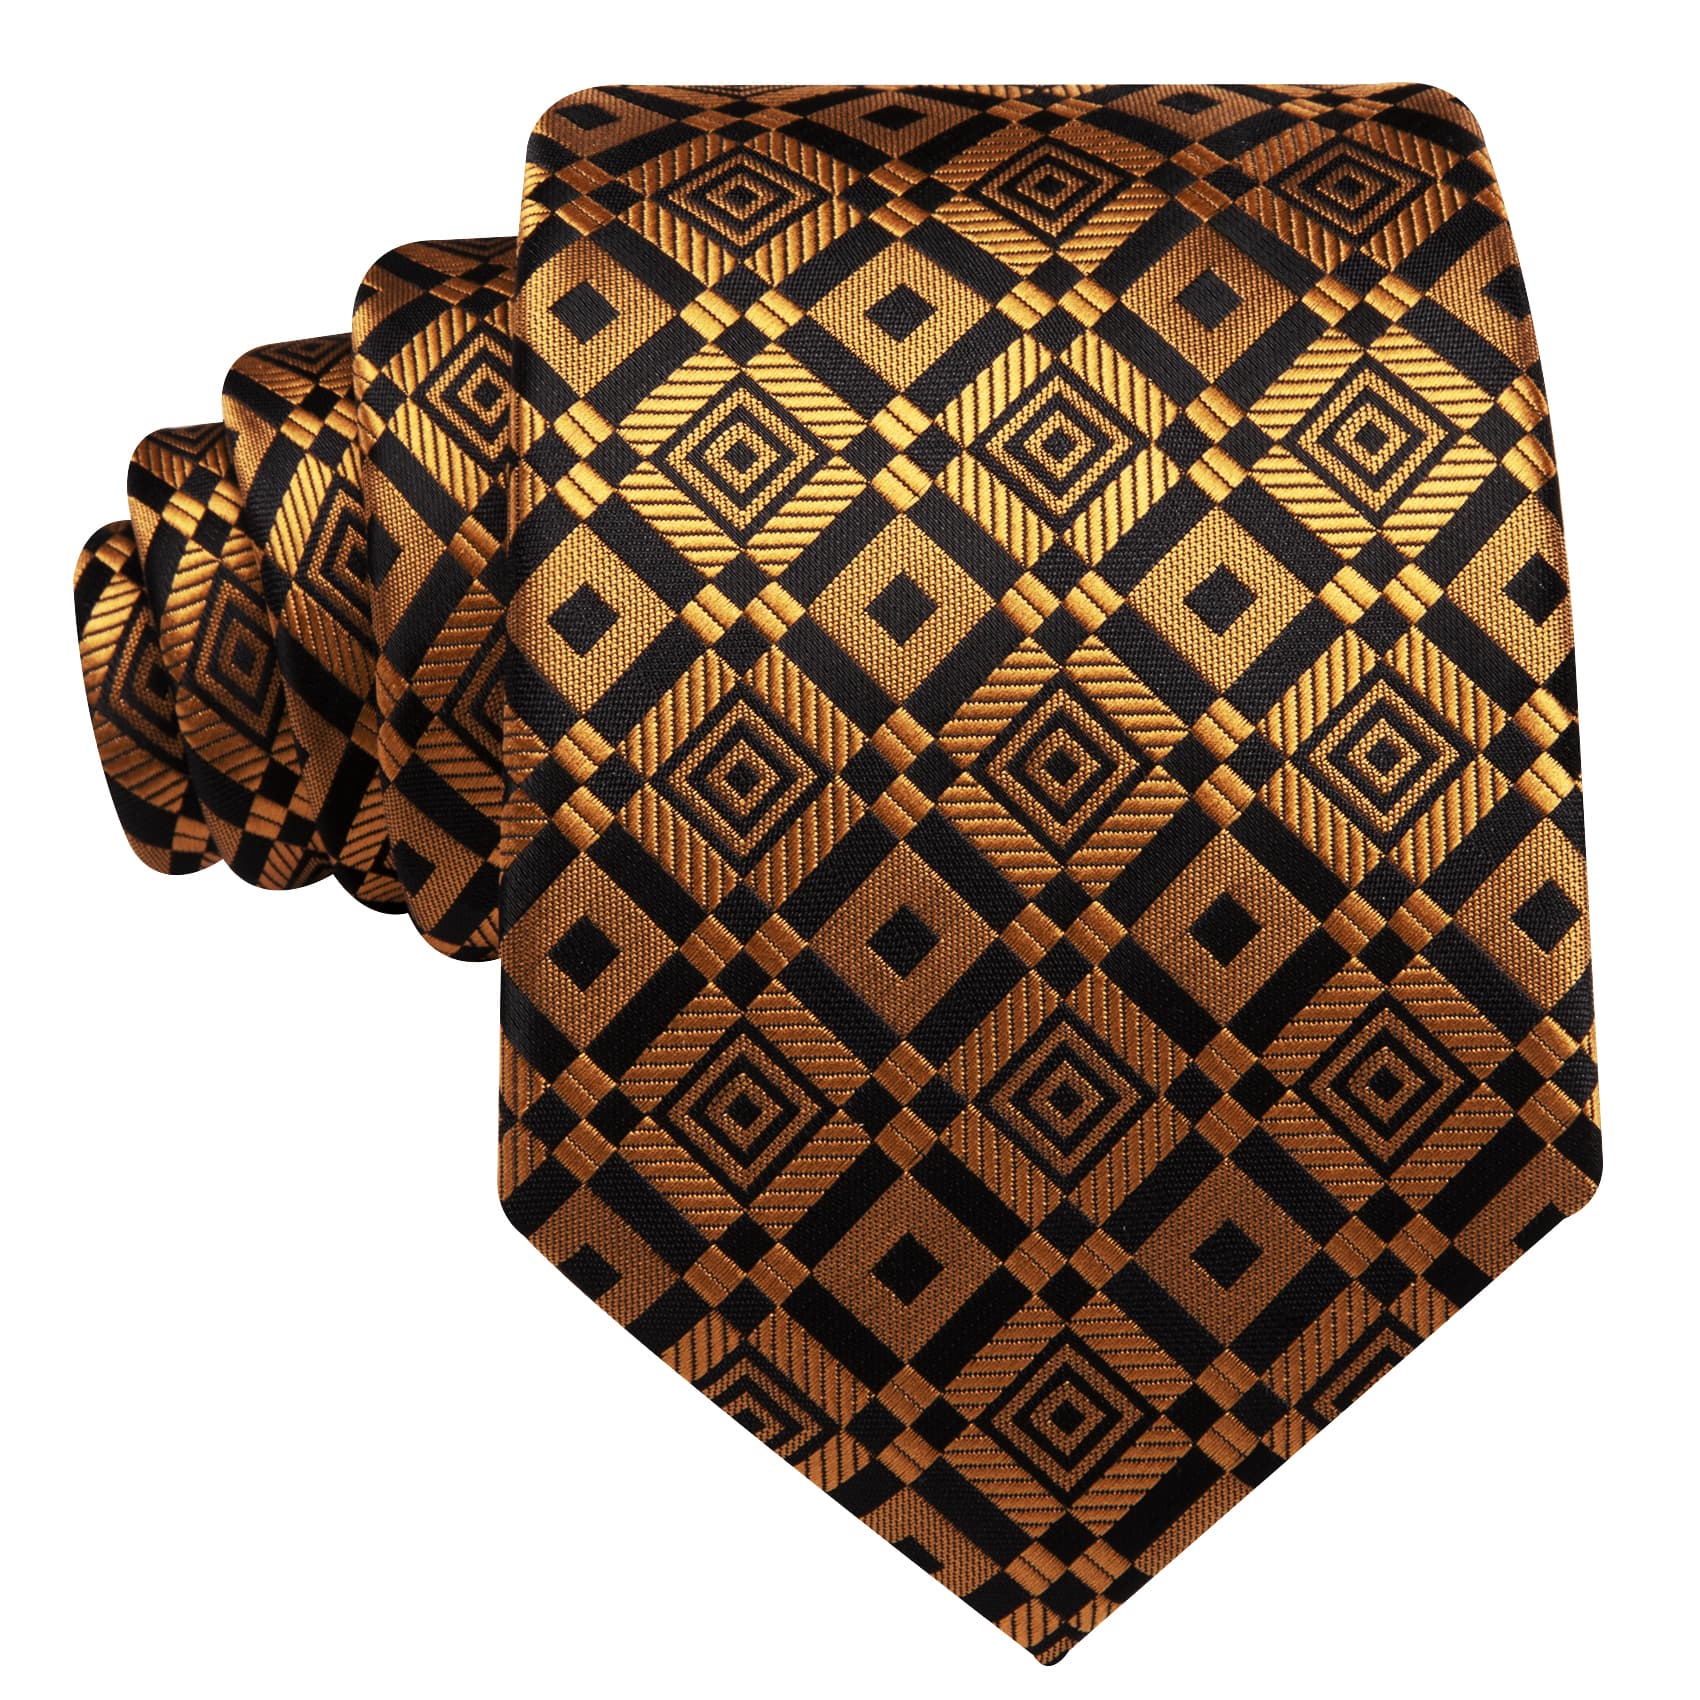  Tie Golden Black Square Pattern Necktie Hanky Cufflinks Set